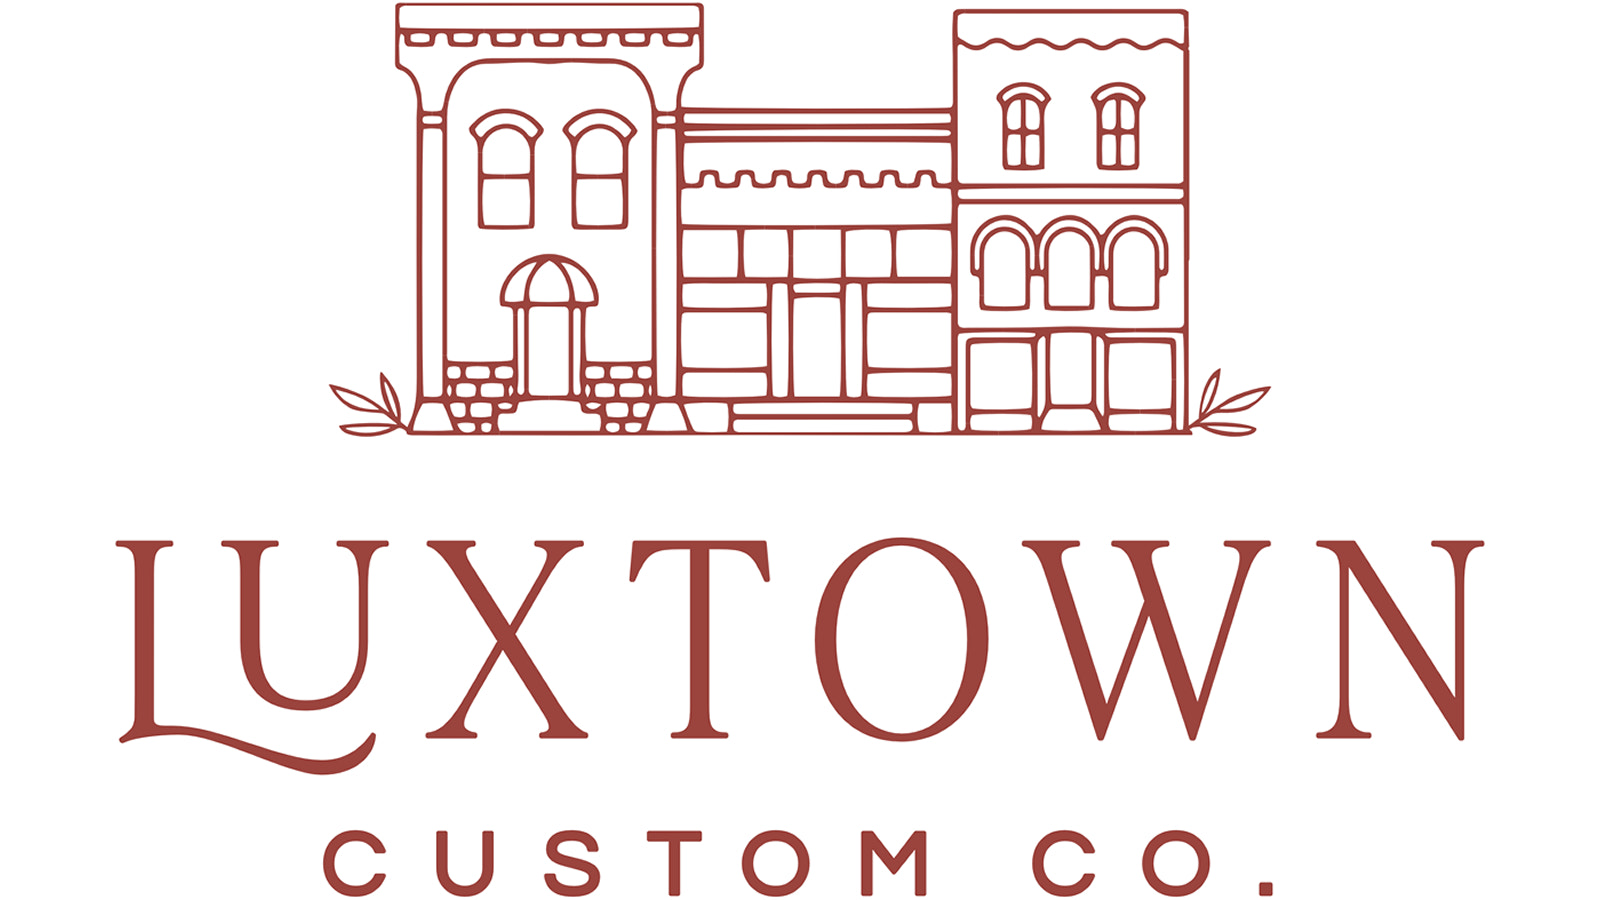 Luxtown gepersonaliseerde producten: kleine luxe tegen praktische prijzen